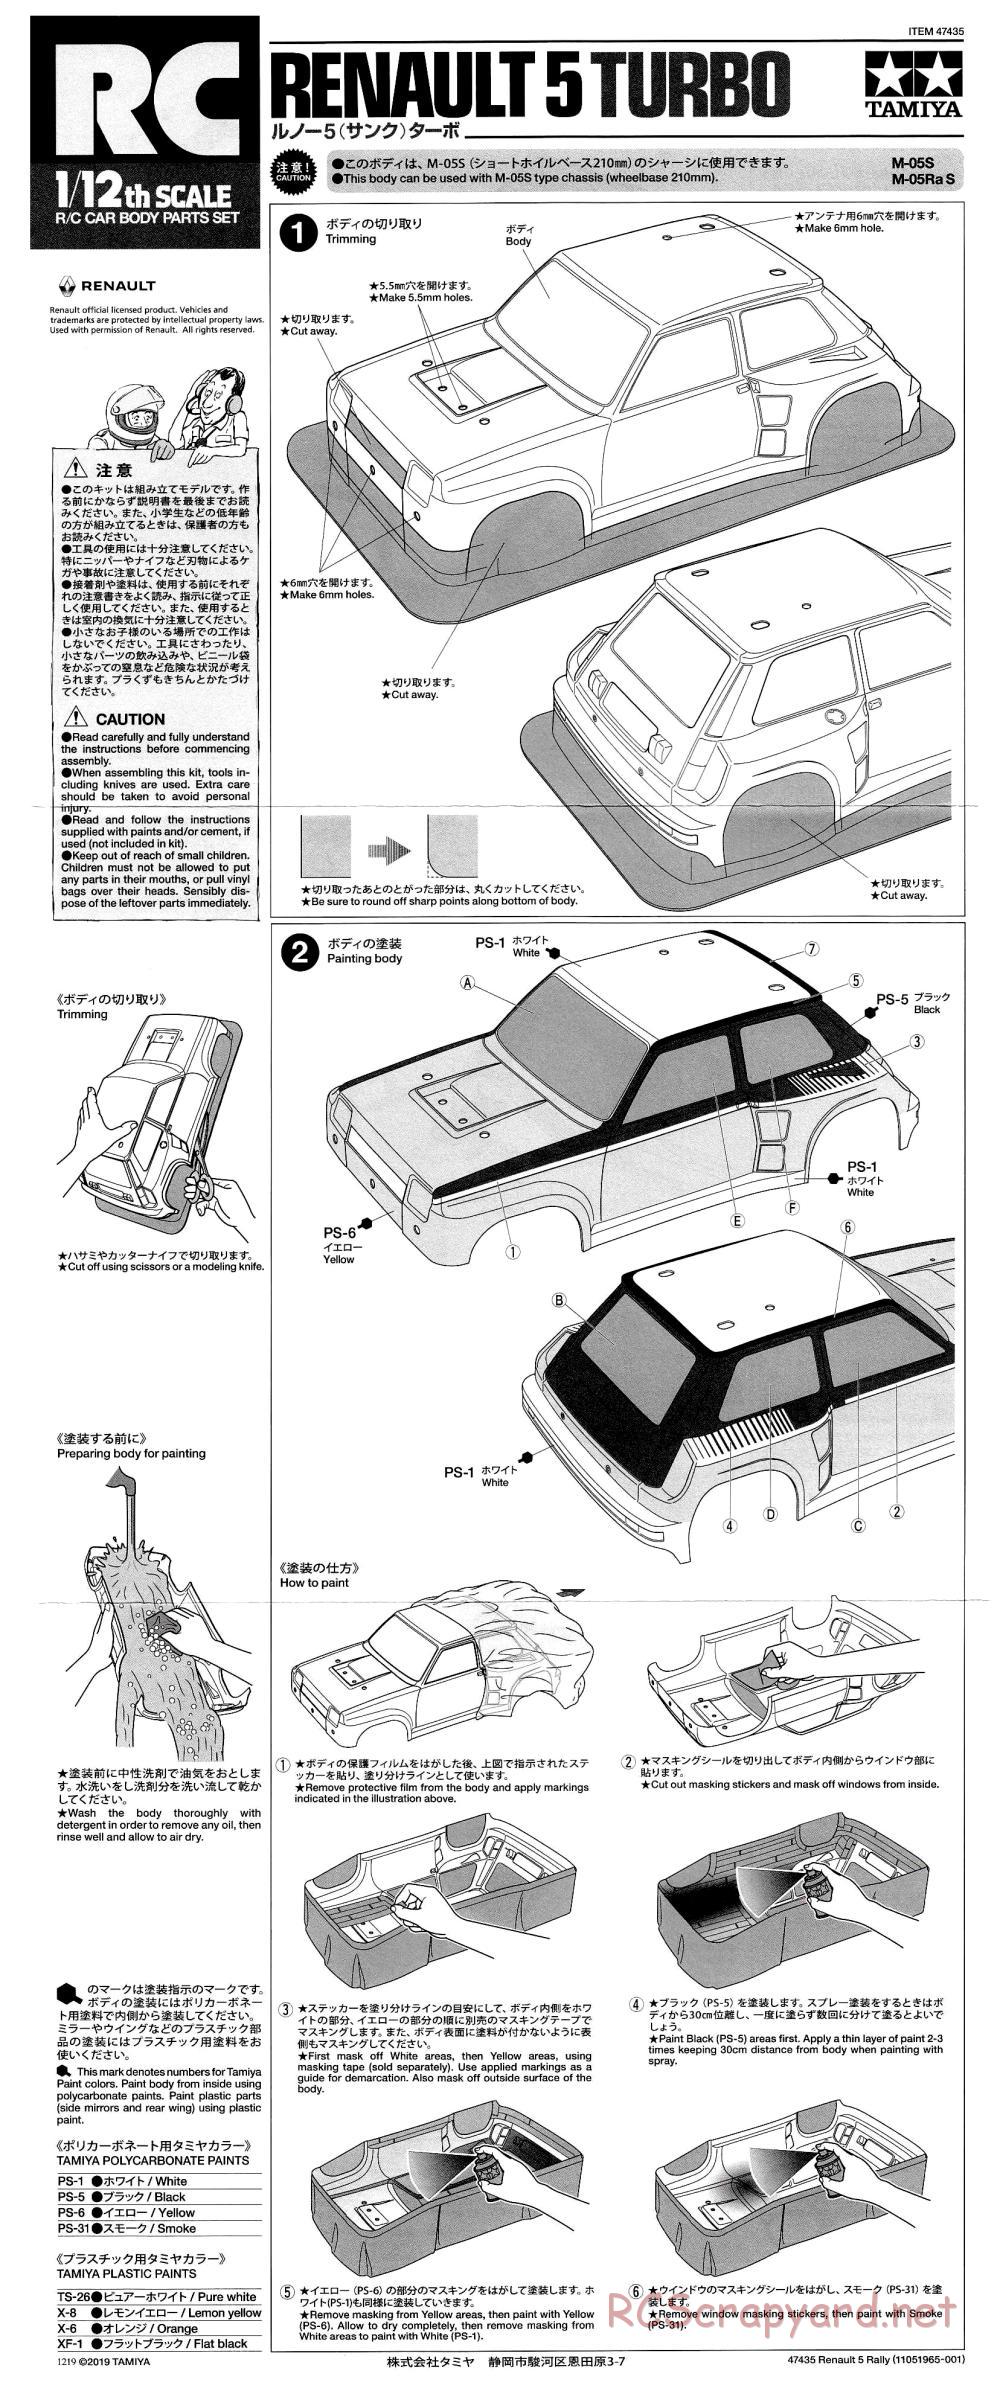 Tamiya - Renault 5 Turbo Rally - M-05Ra Chassis - Body Manual - Page 1